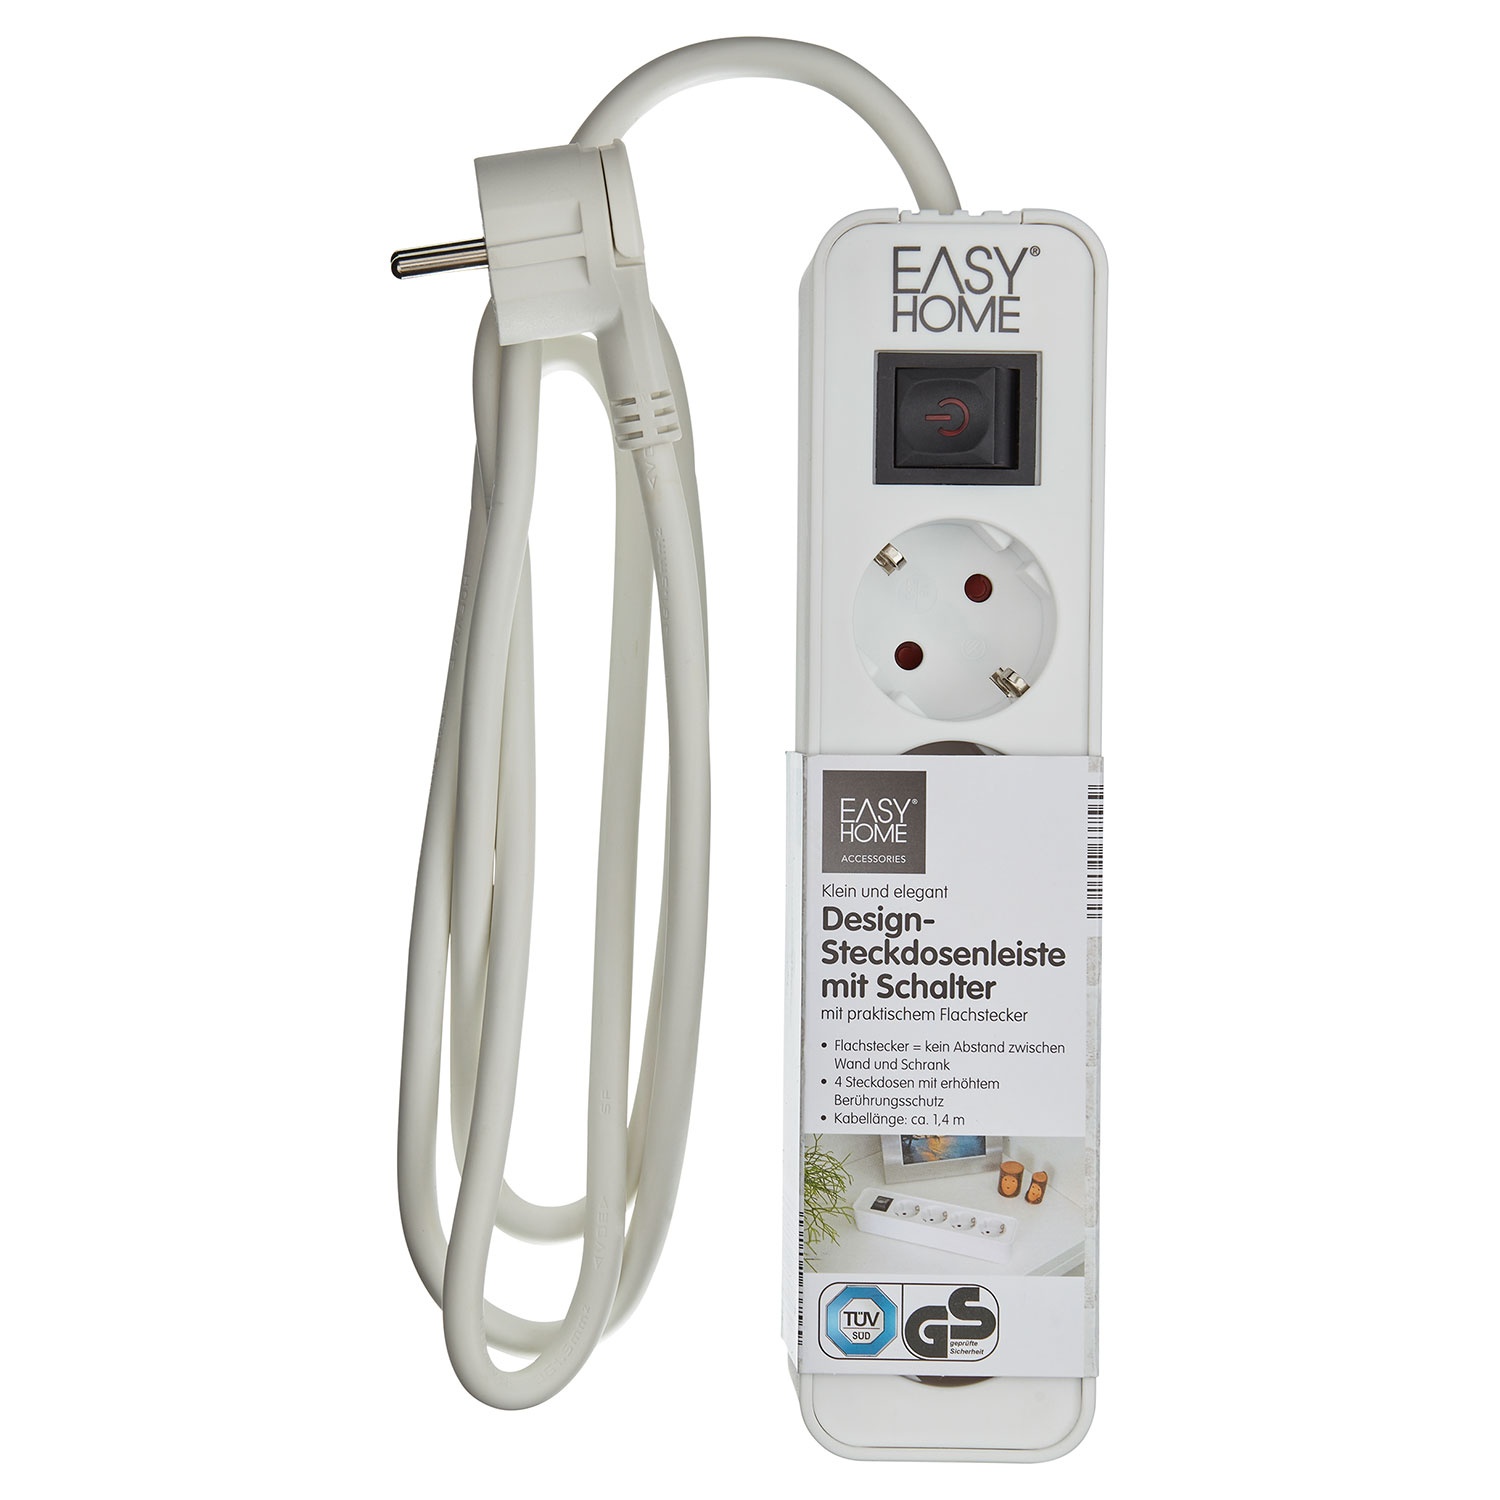 EASY HOME® Design-Steckdosenleiste mit Schalter